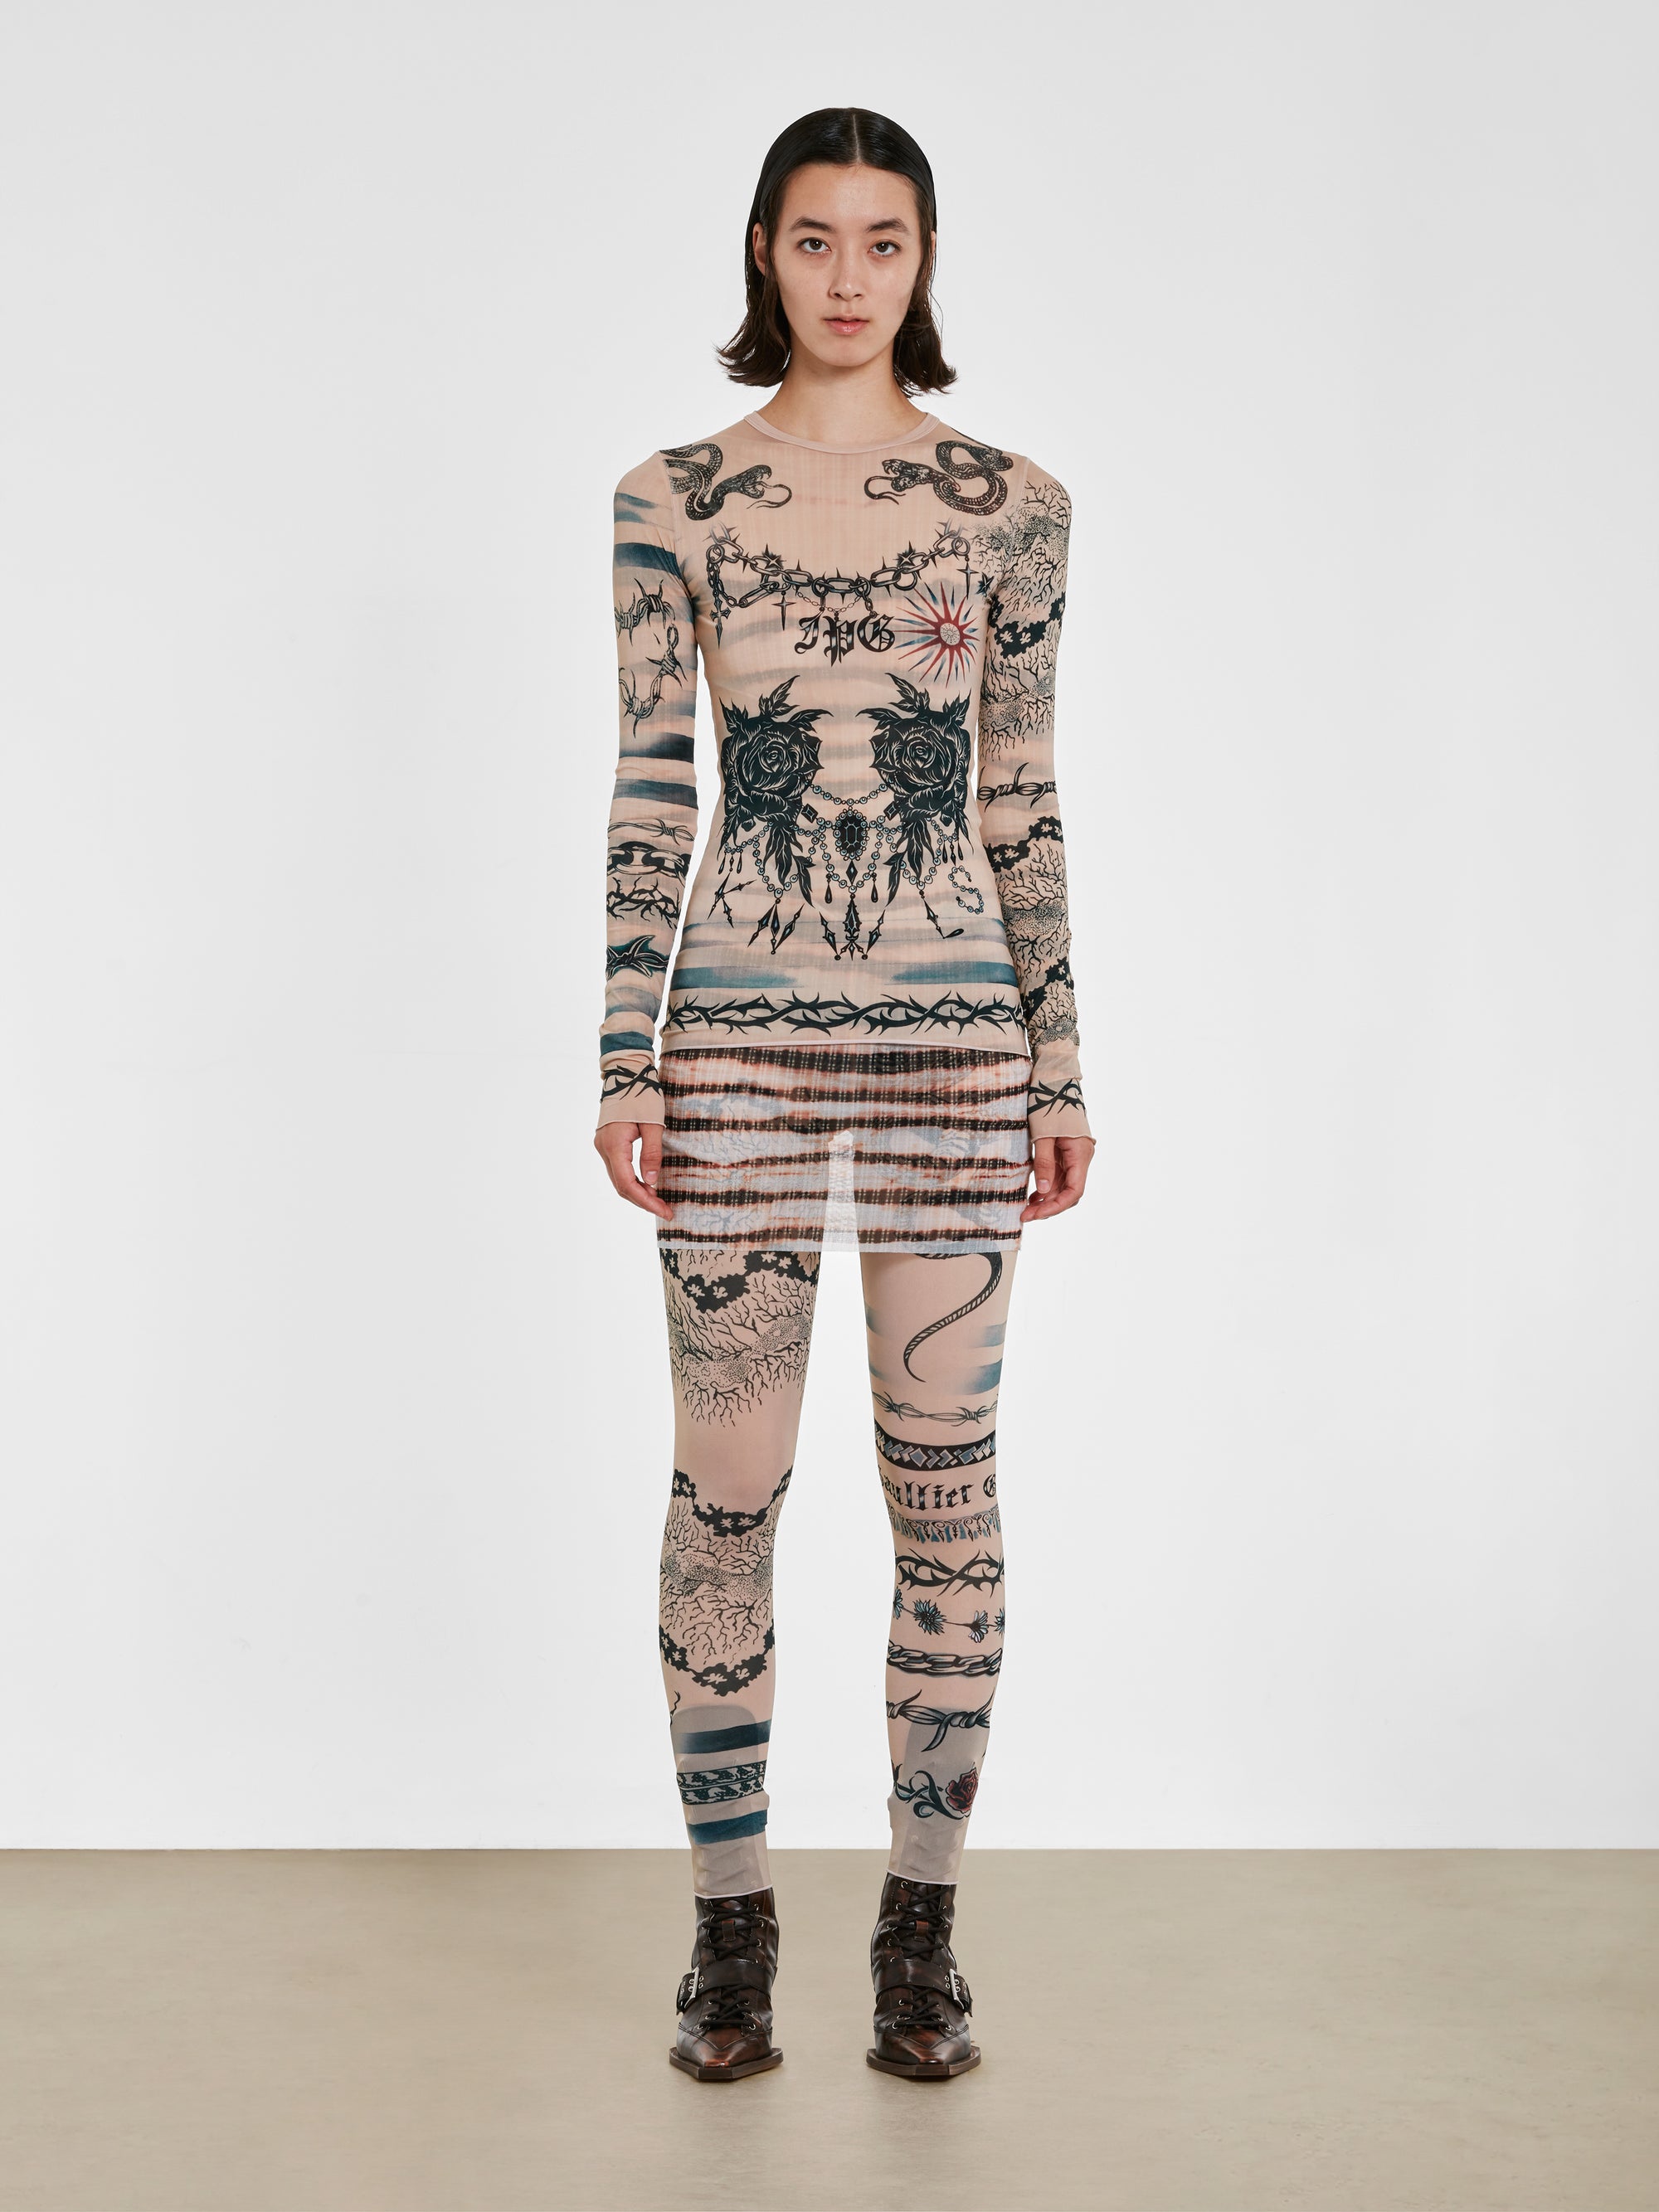 Jean Paul Gaultier - KNWLS Women’s Trompe L’Oeil Tattoo Long Sleeve Top - (Nude/Grey/Black) view 4